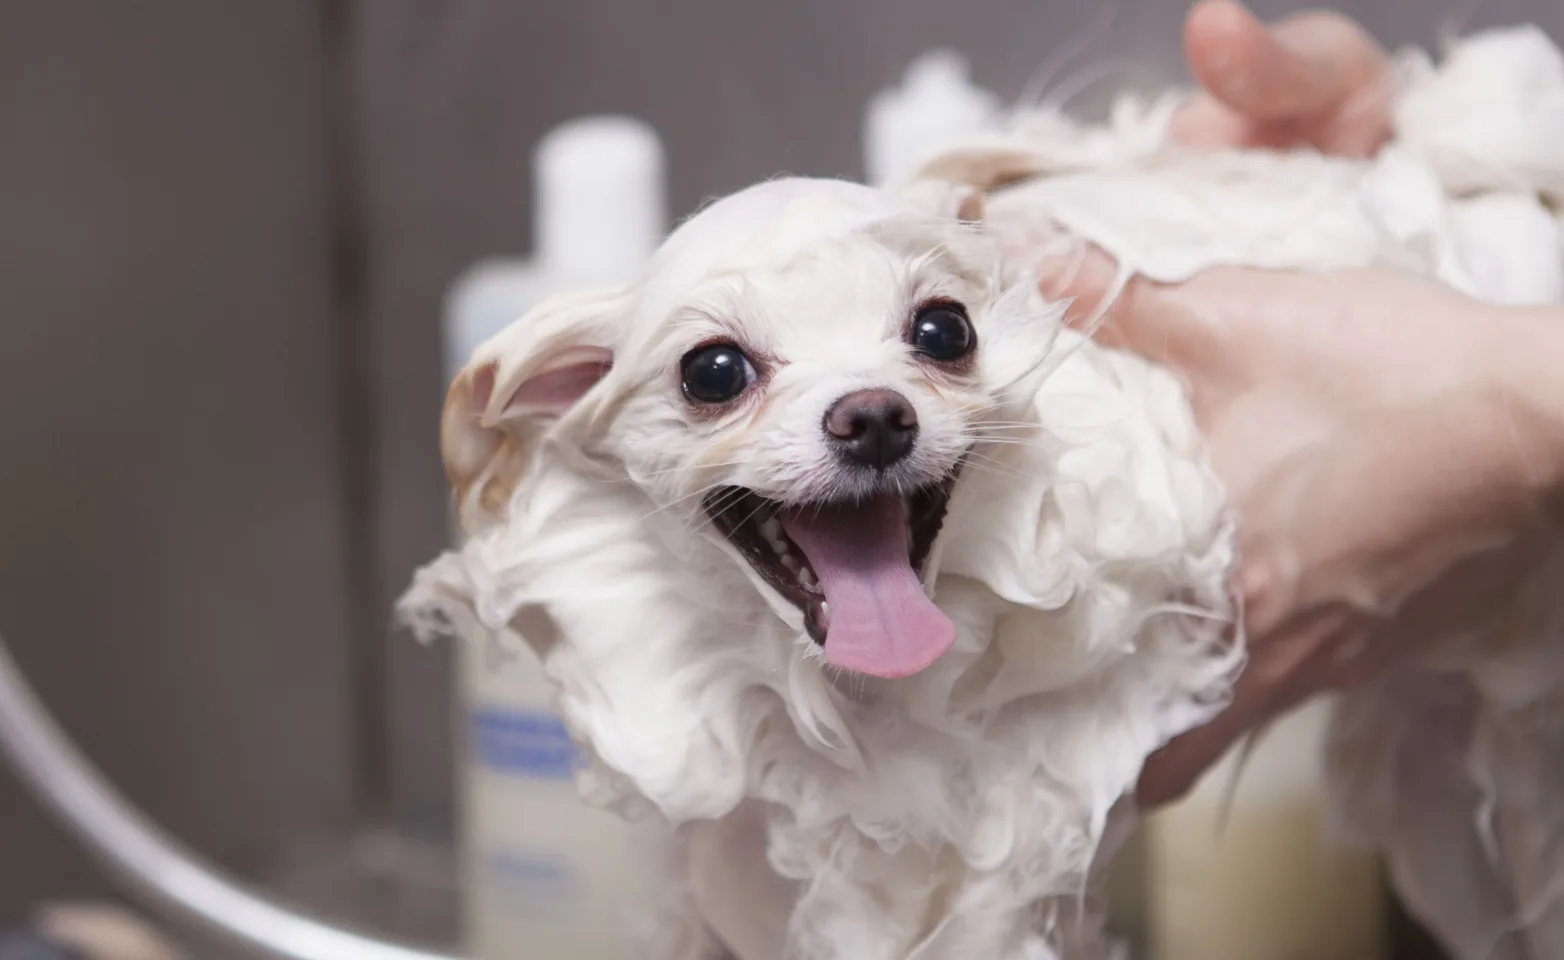 Dog getting bathed